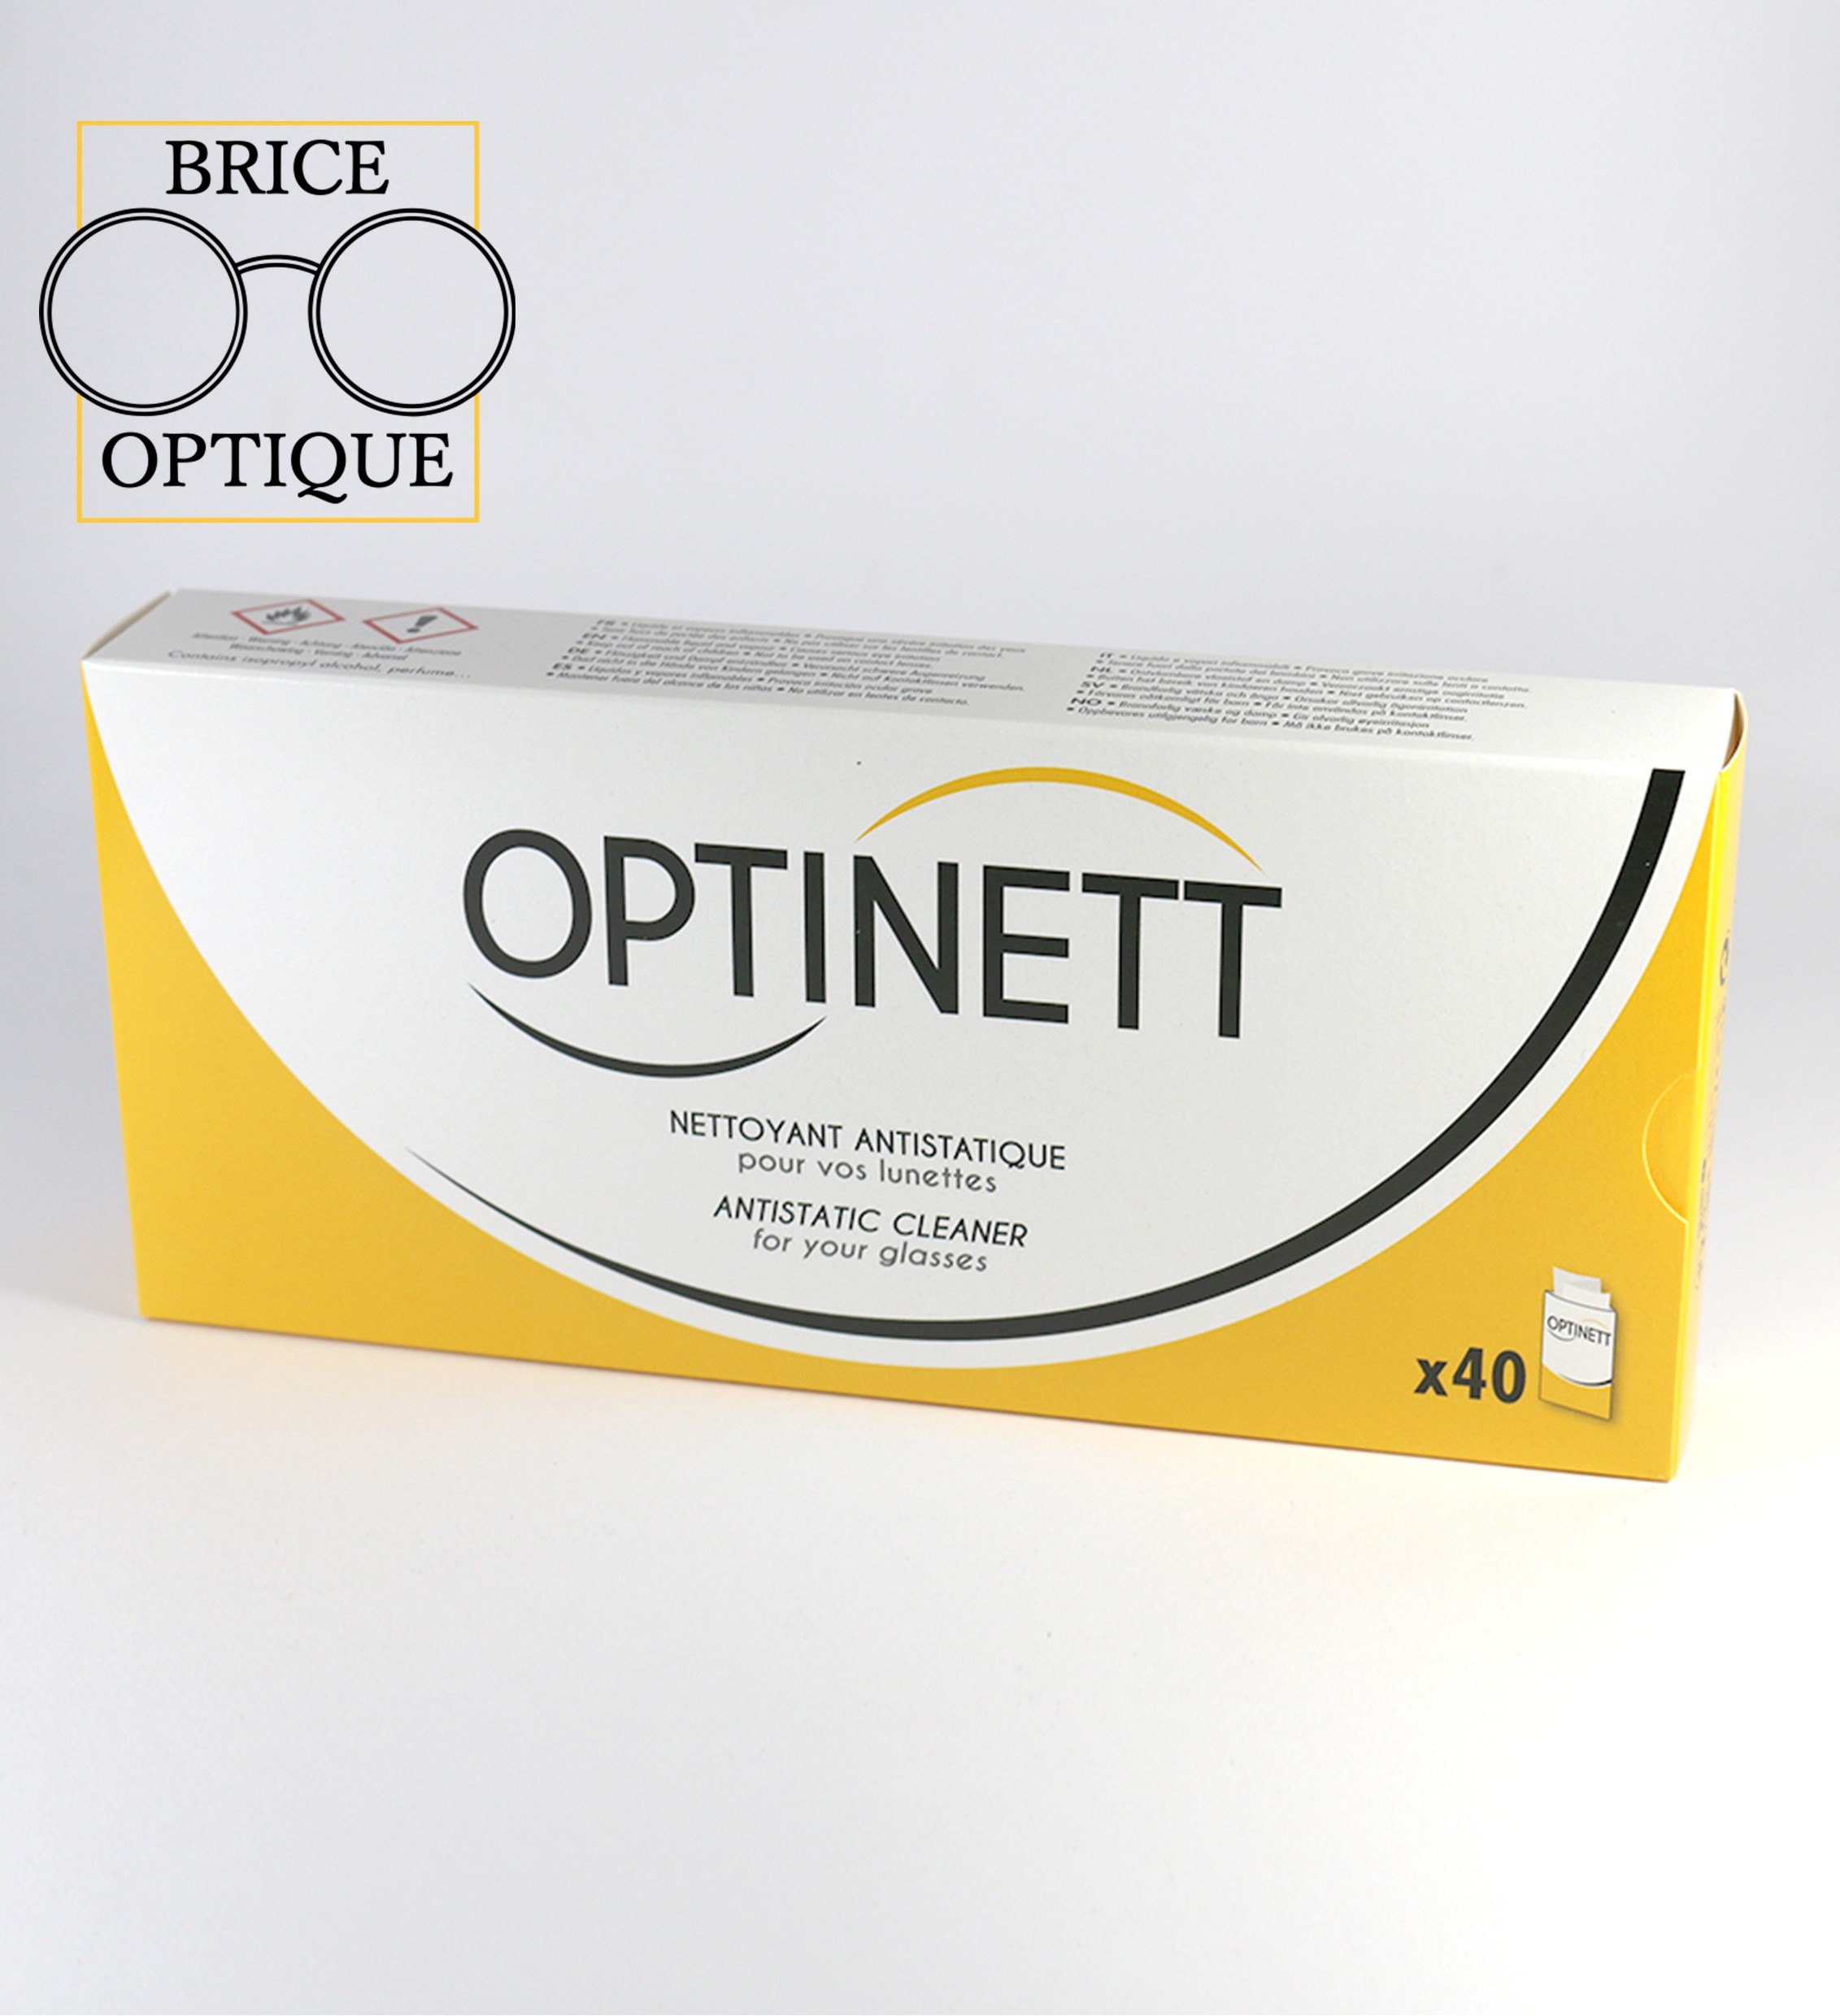 Lingettes nettoyantes antistatiques pour lunettes Optinett - 40